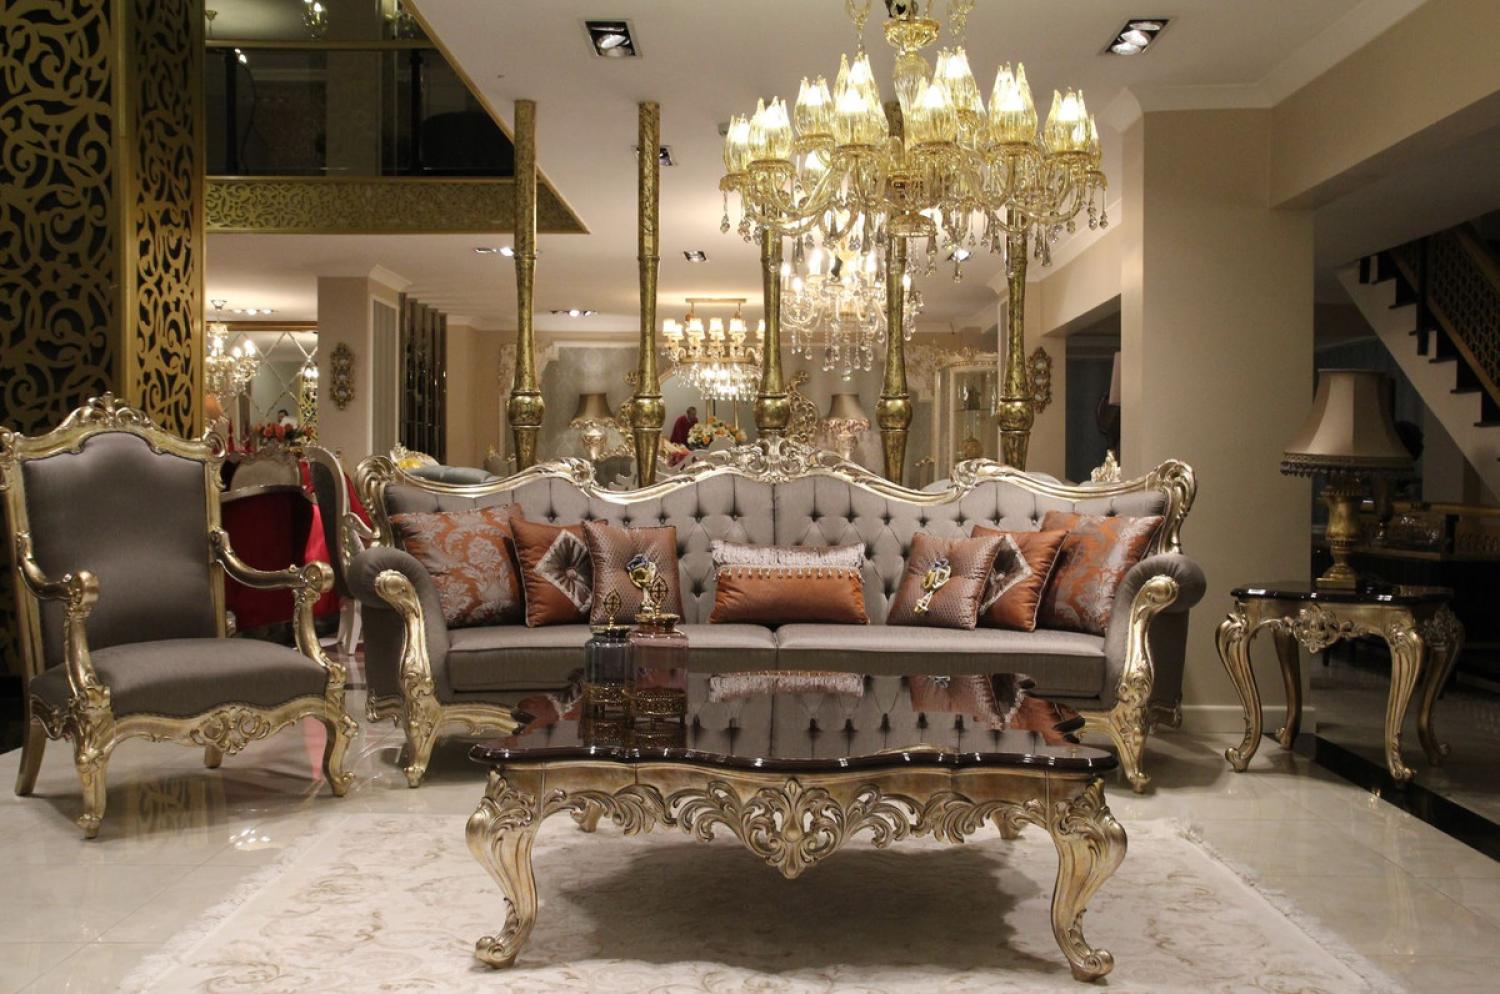 Casa Padrino Luxus Barock Wohnzimmer Set Grau / Dunkelbraun / Gold - 2 Sofas & 2 Sessel & 1 Couchtisch & 2 Beistelltische - Wohnzimmer Möbel im Barockstil - Edel & Prunkvoll Bild 1